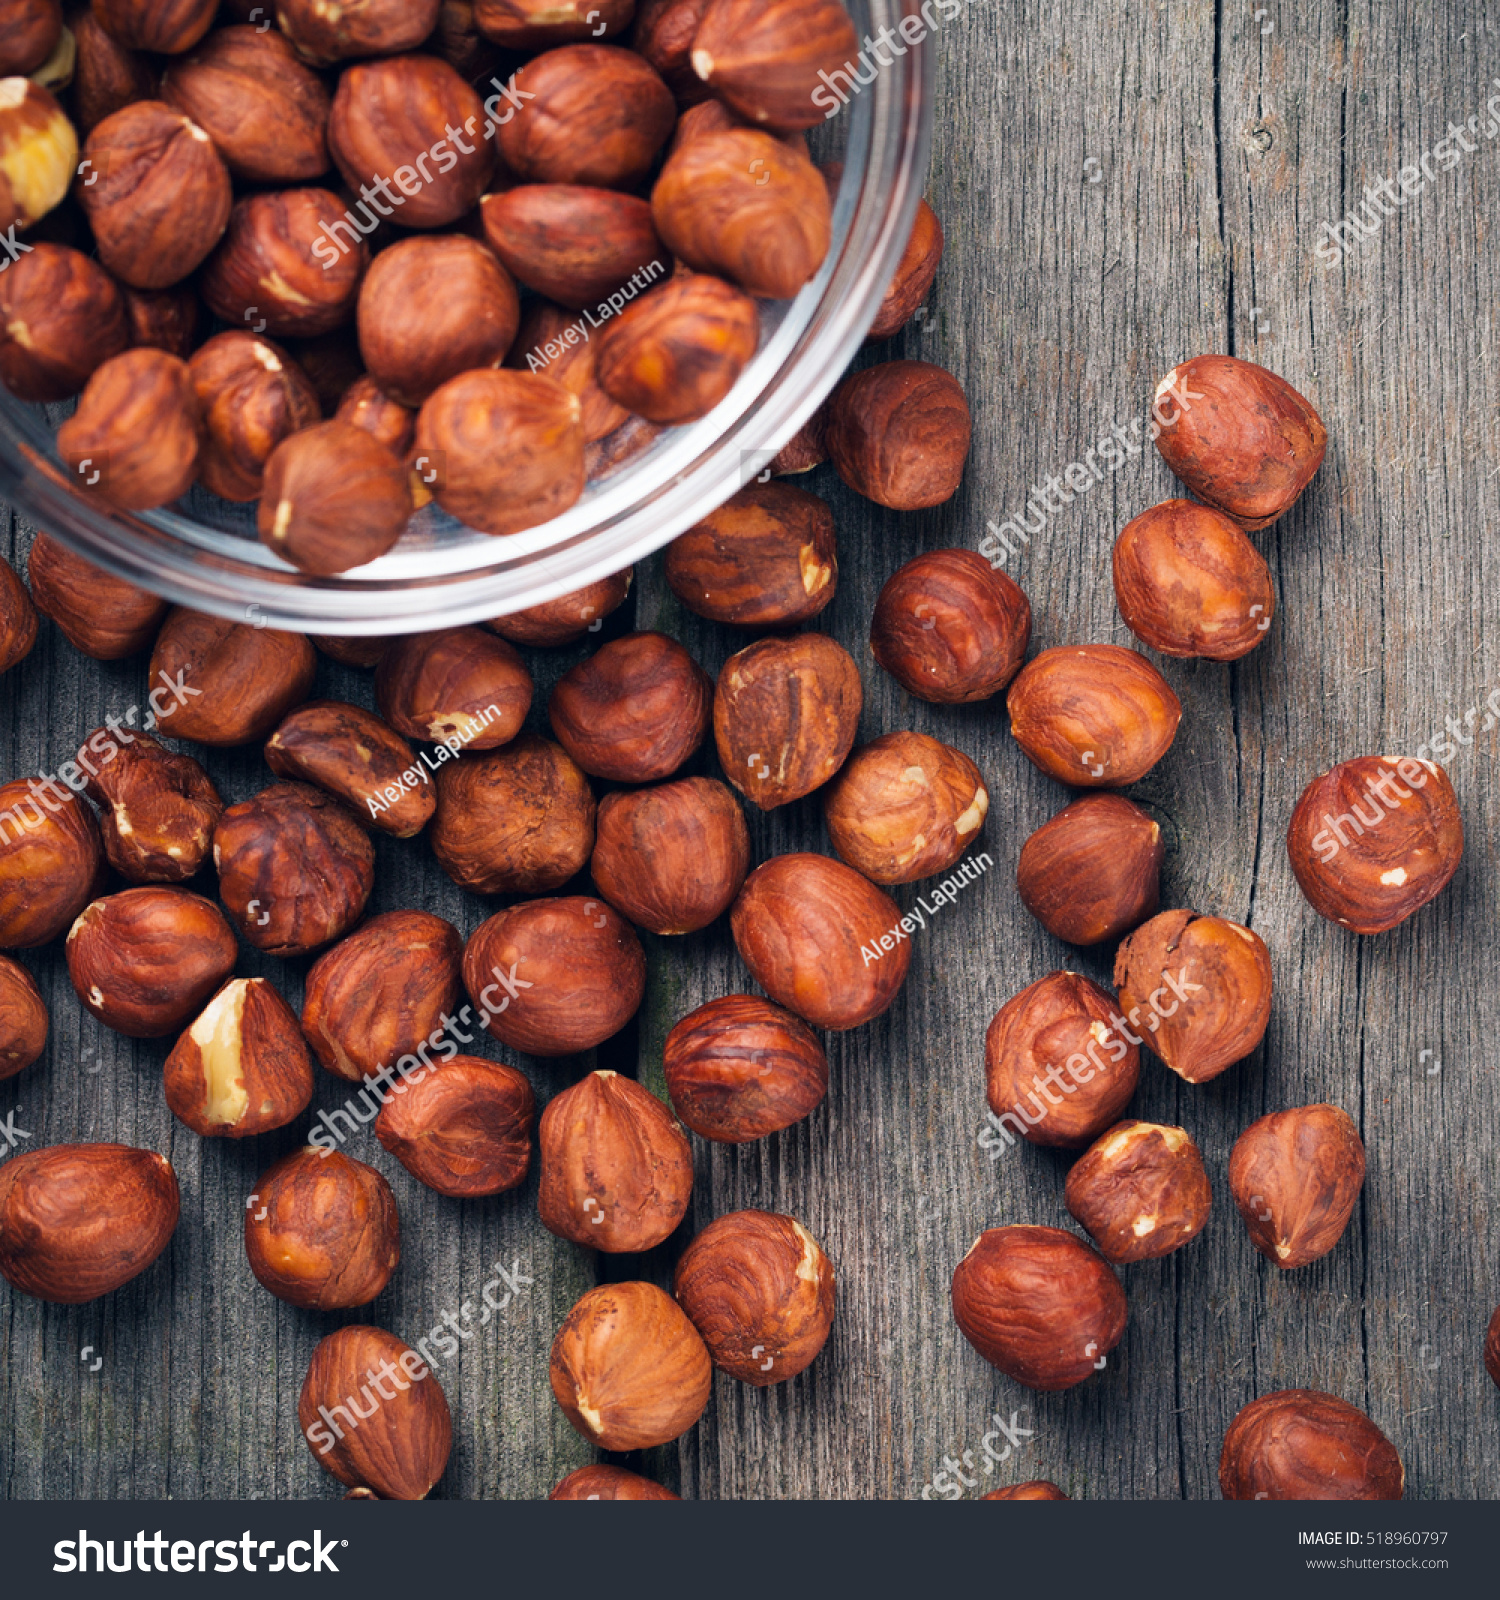 Hazelnuts Filbert On Wood Background Closeup Stock Photo 518960797 ...